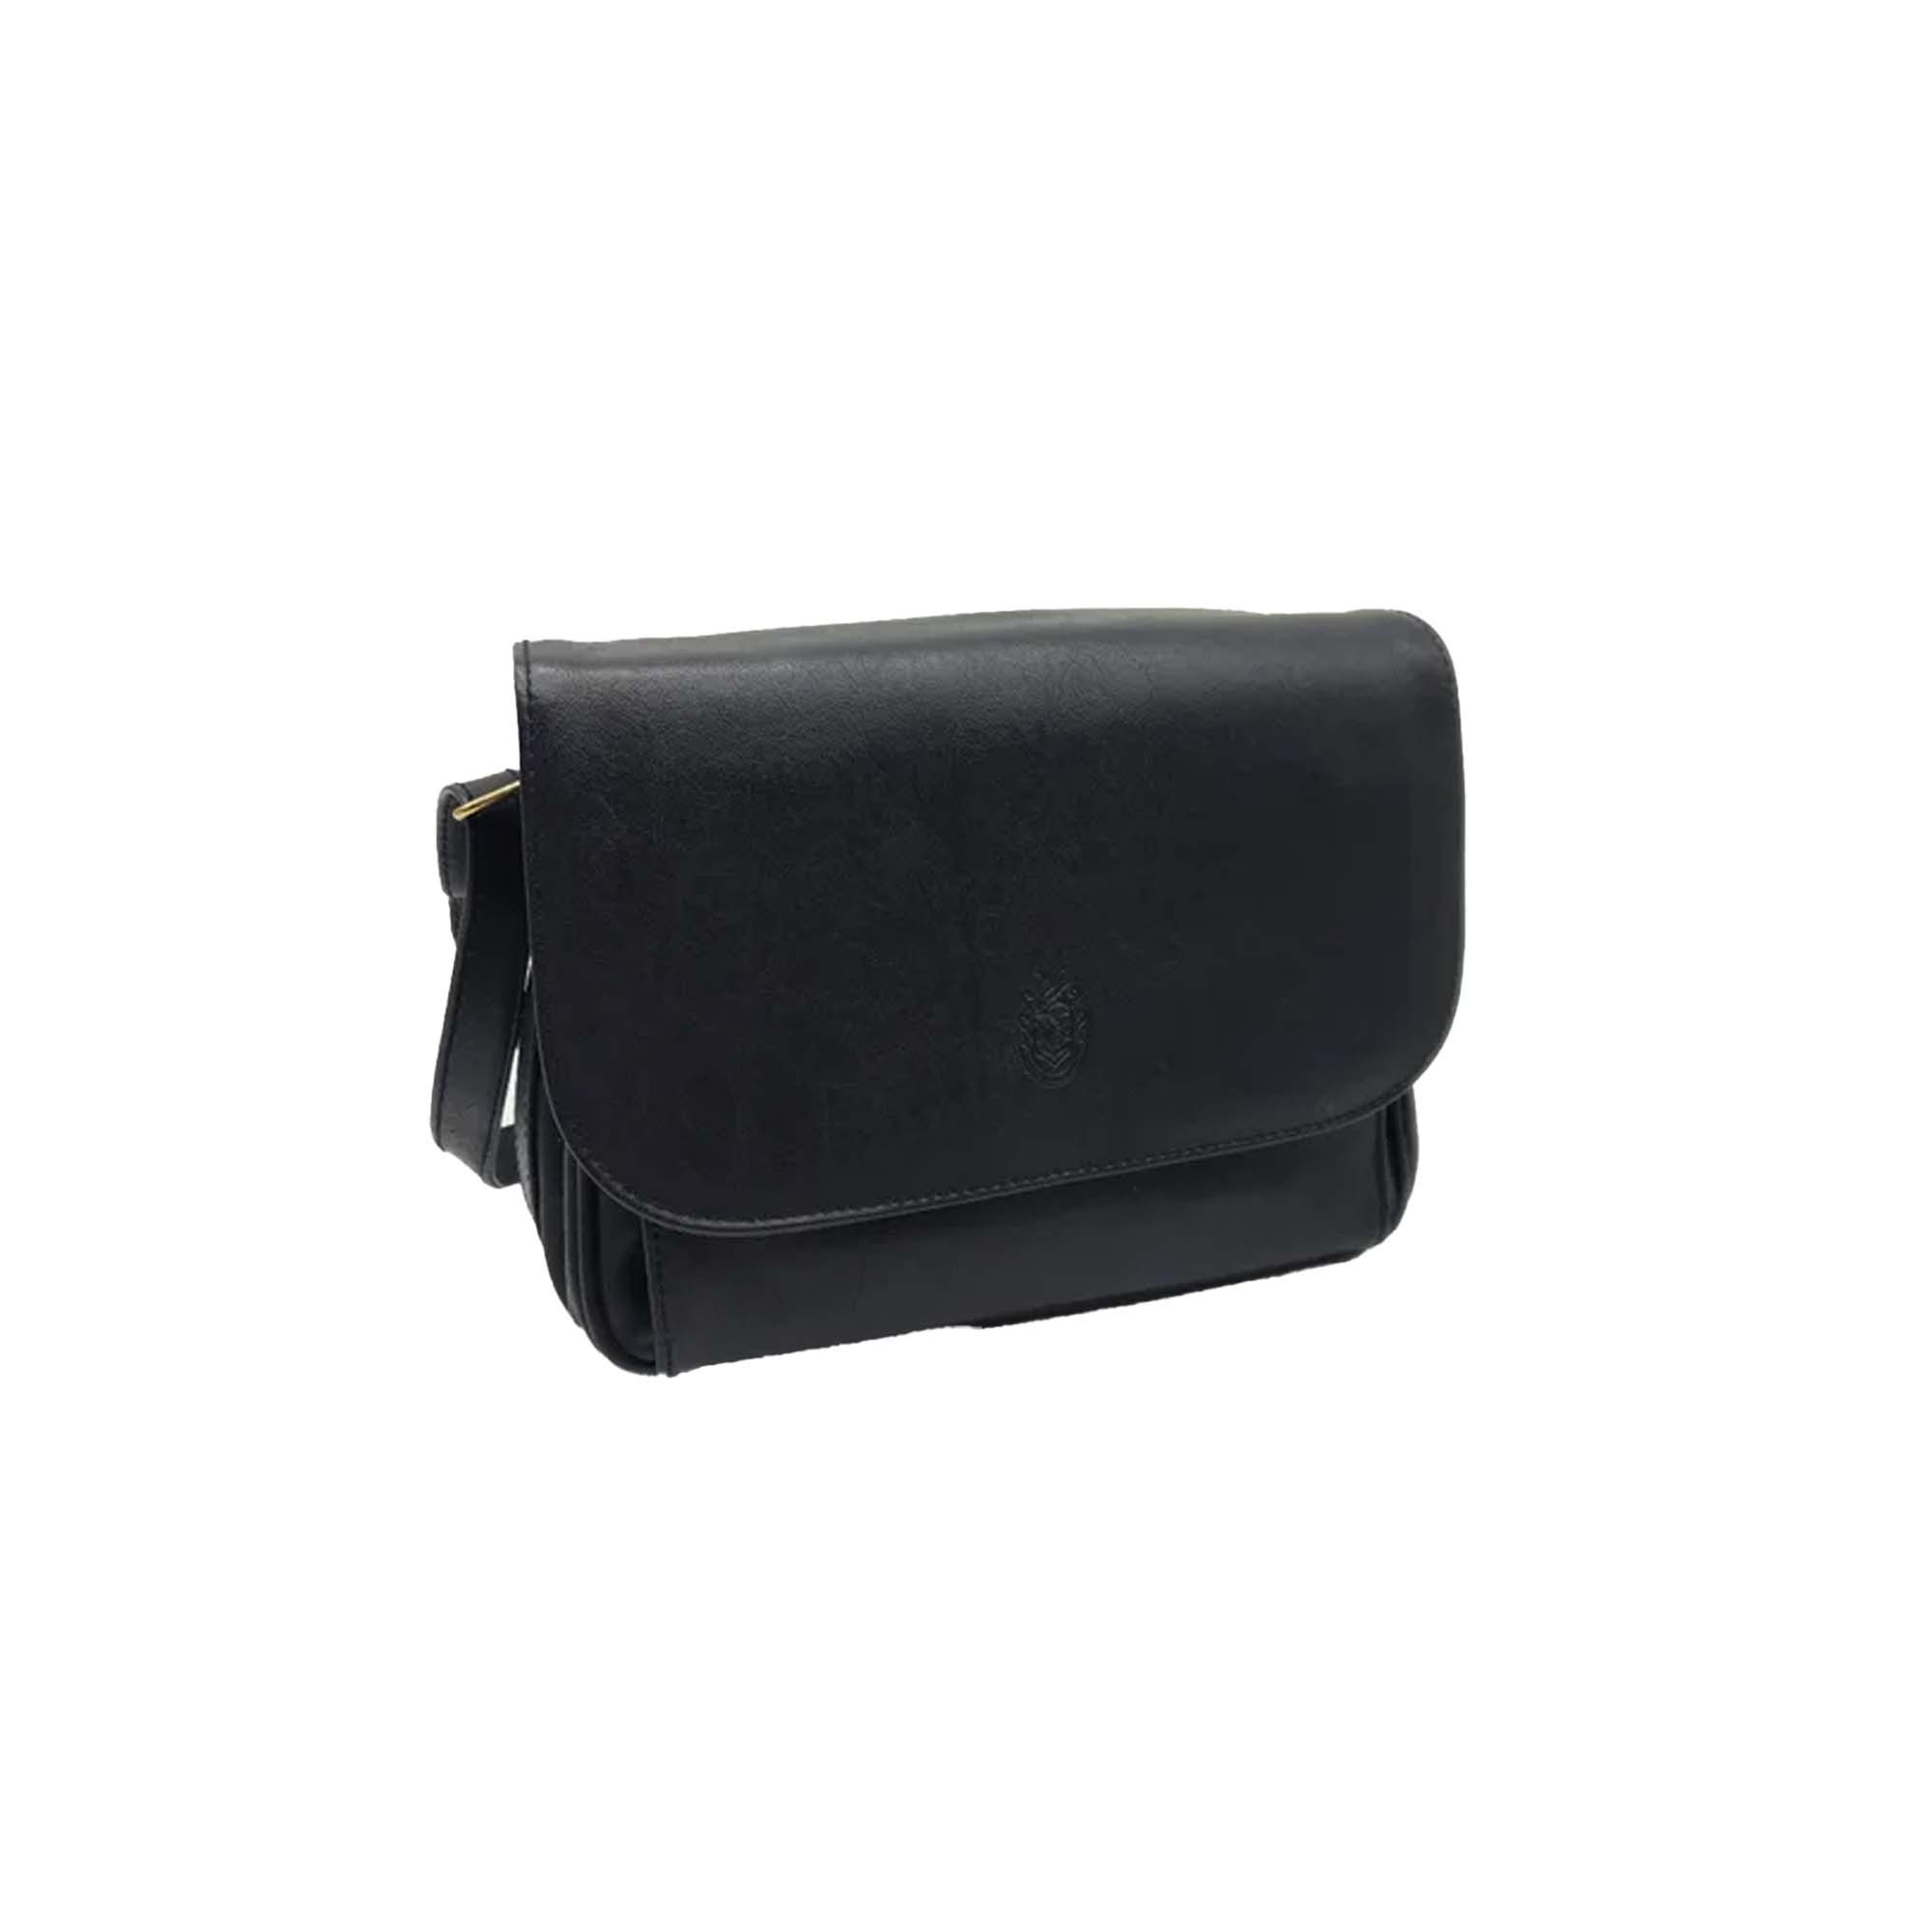 Buy PURSEO Women Black Handbag Black Online @ Best Price in India |  Flipkart.com